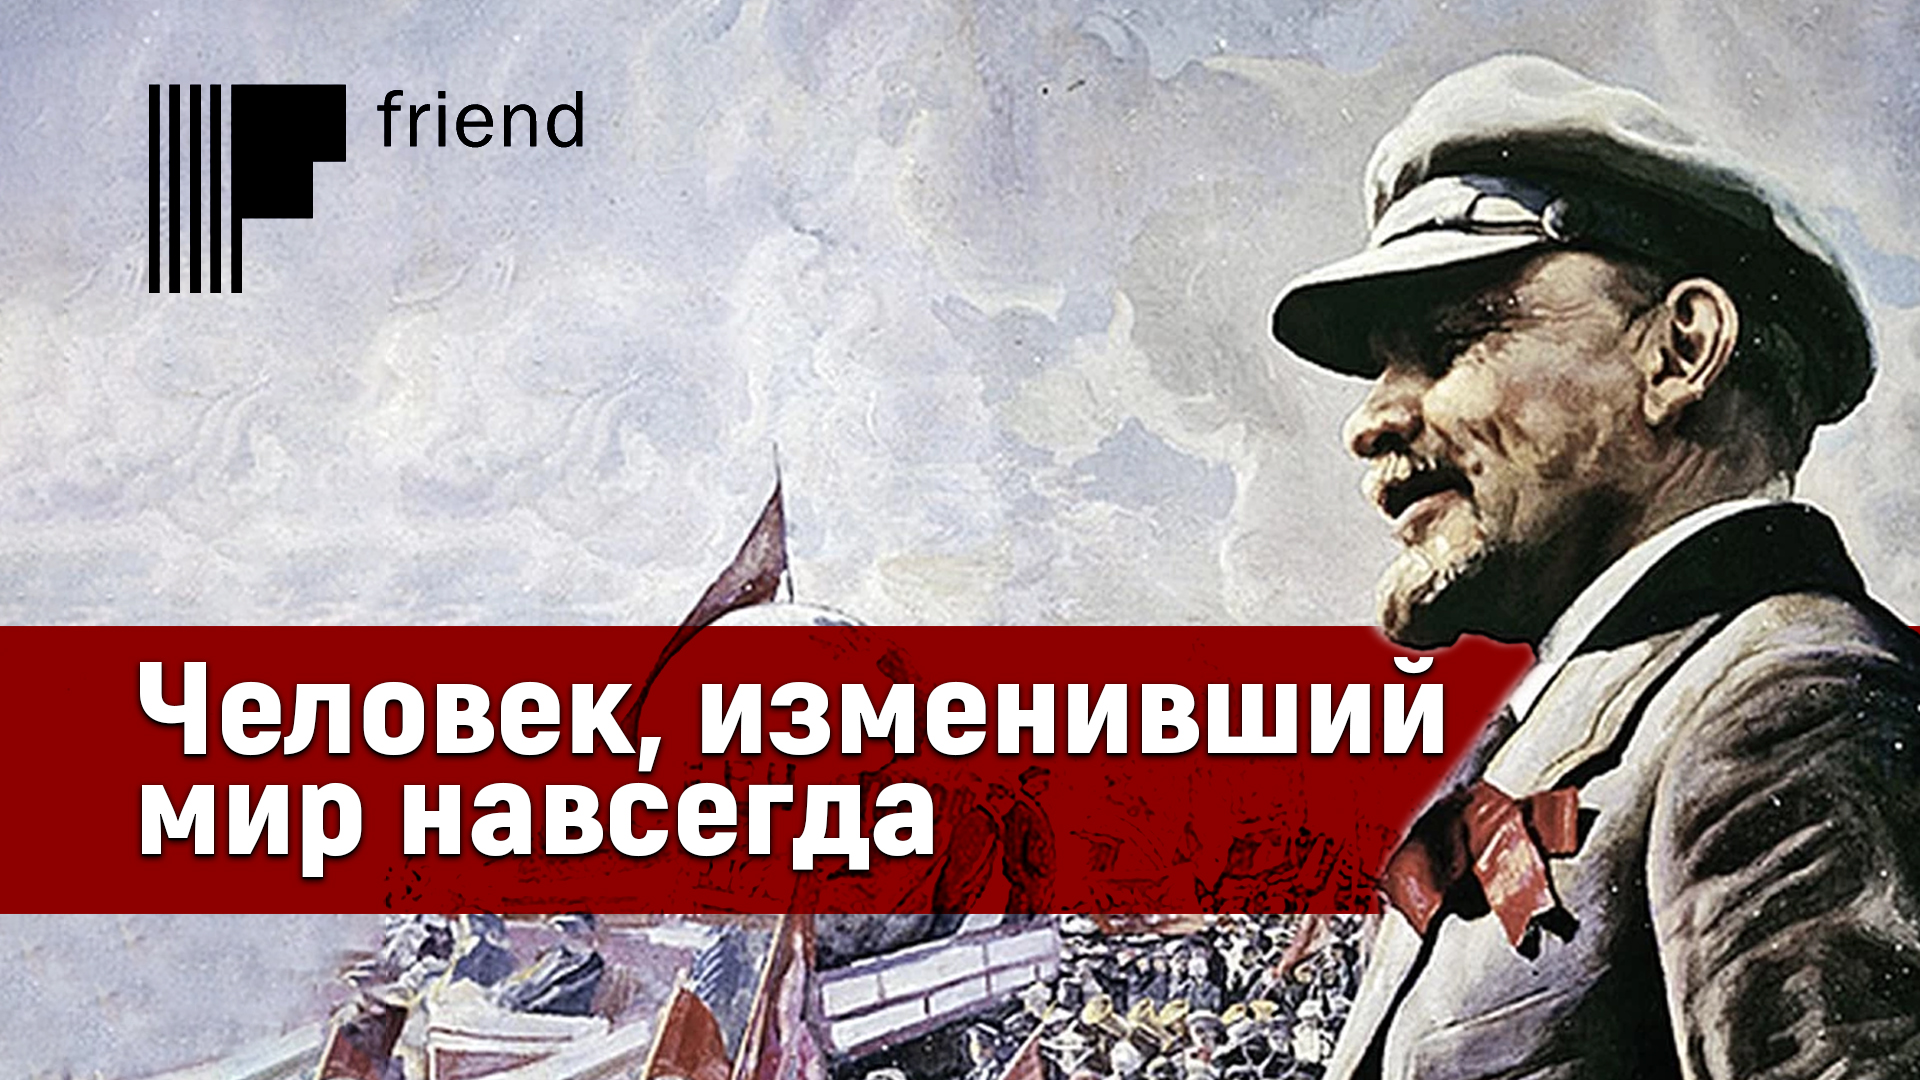 22 Апреля праздник Ленин